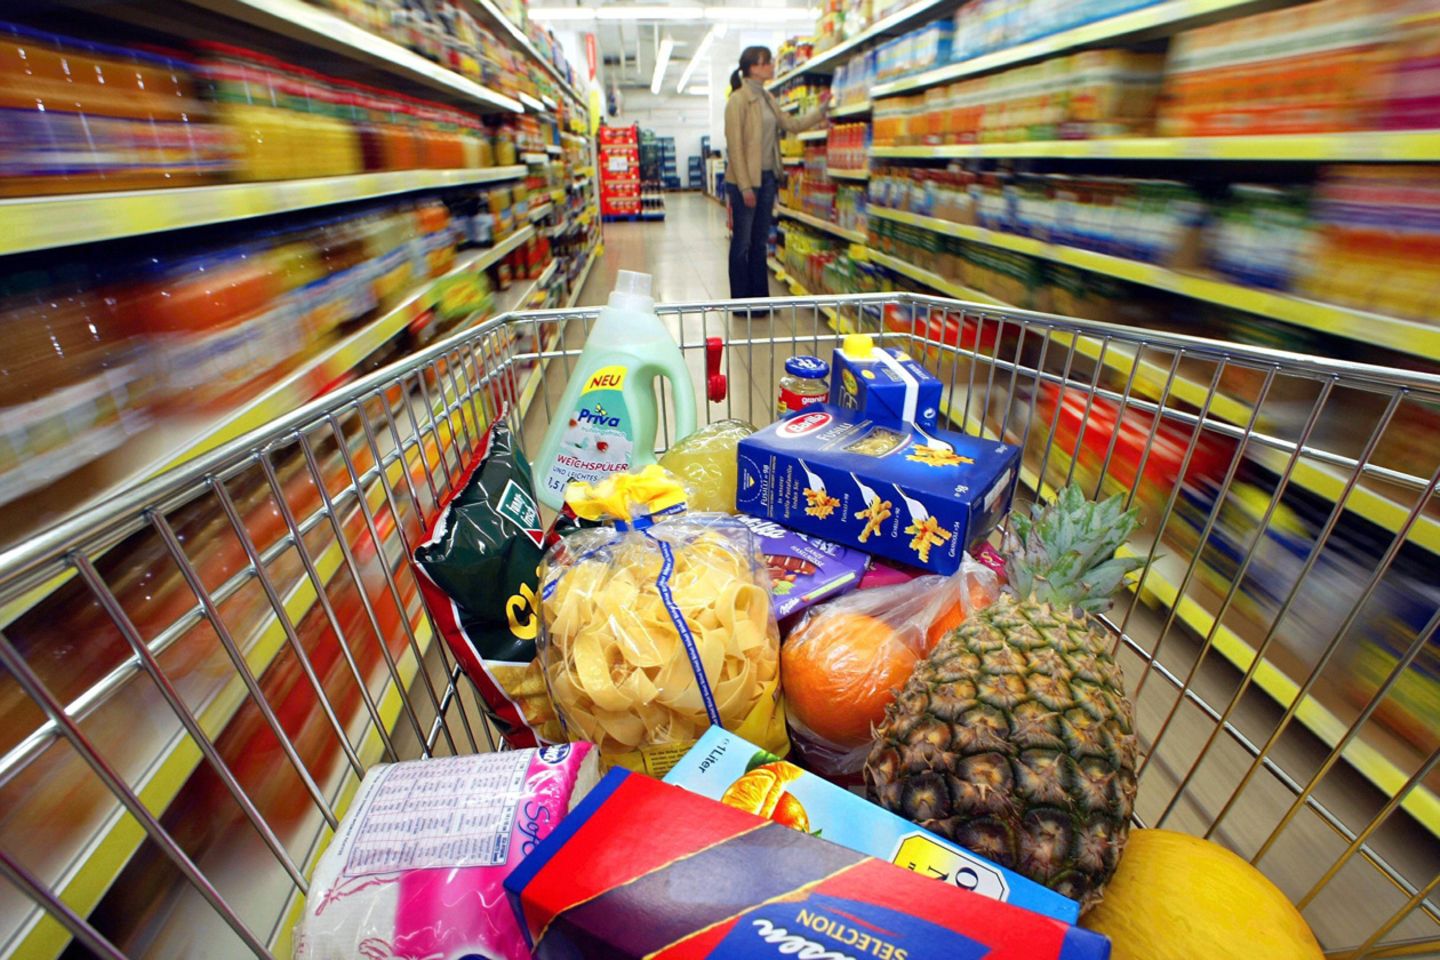 Noch mal schnell in den Supermarkt? Nach Feierabend nervt einkaufen ungemein - wie praktisch, dass es inzwischen clevere Bestellmöglichkeiten gibt.